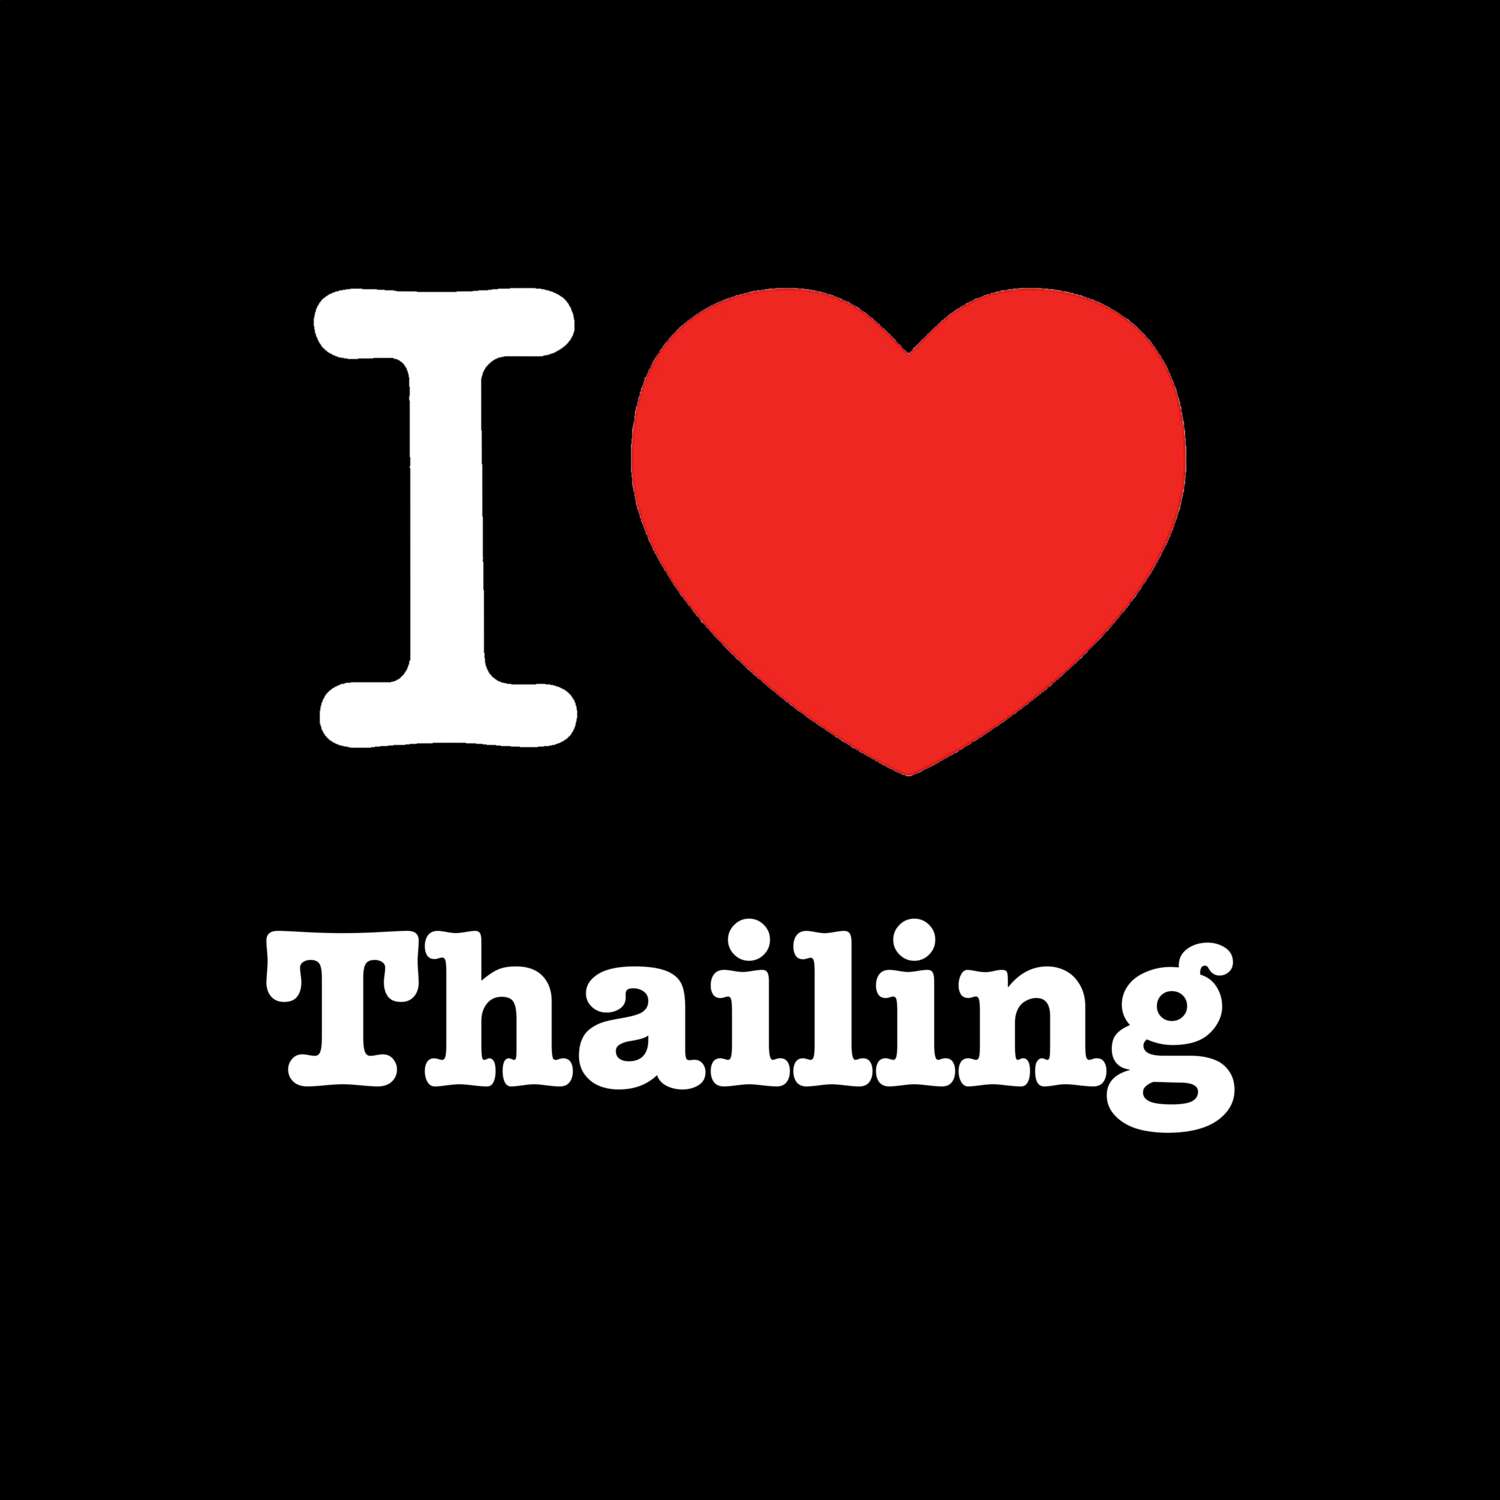 Thailing T-Shirt »I love«